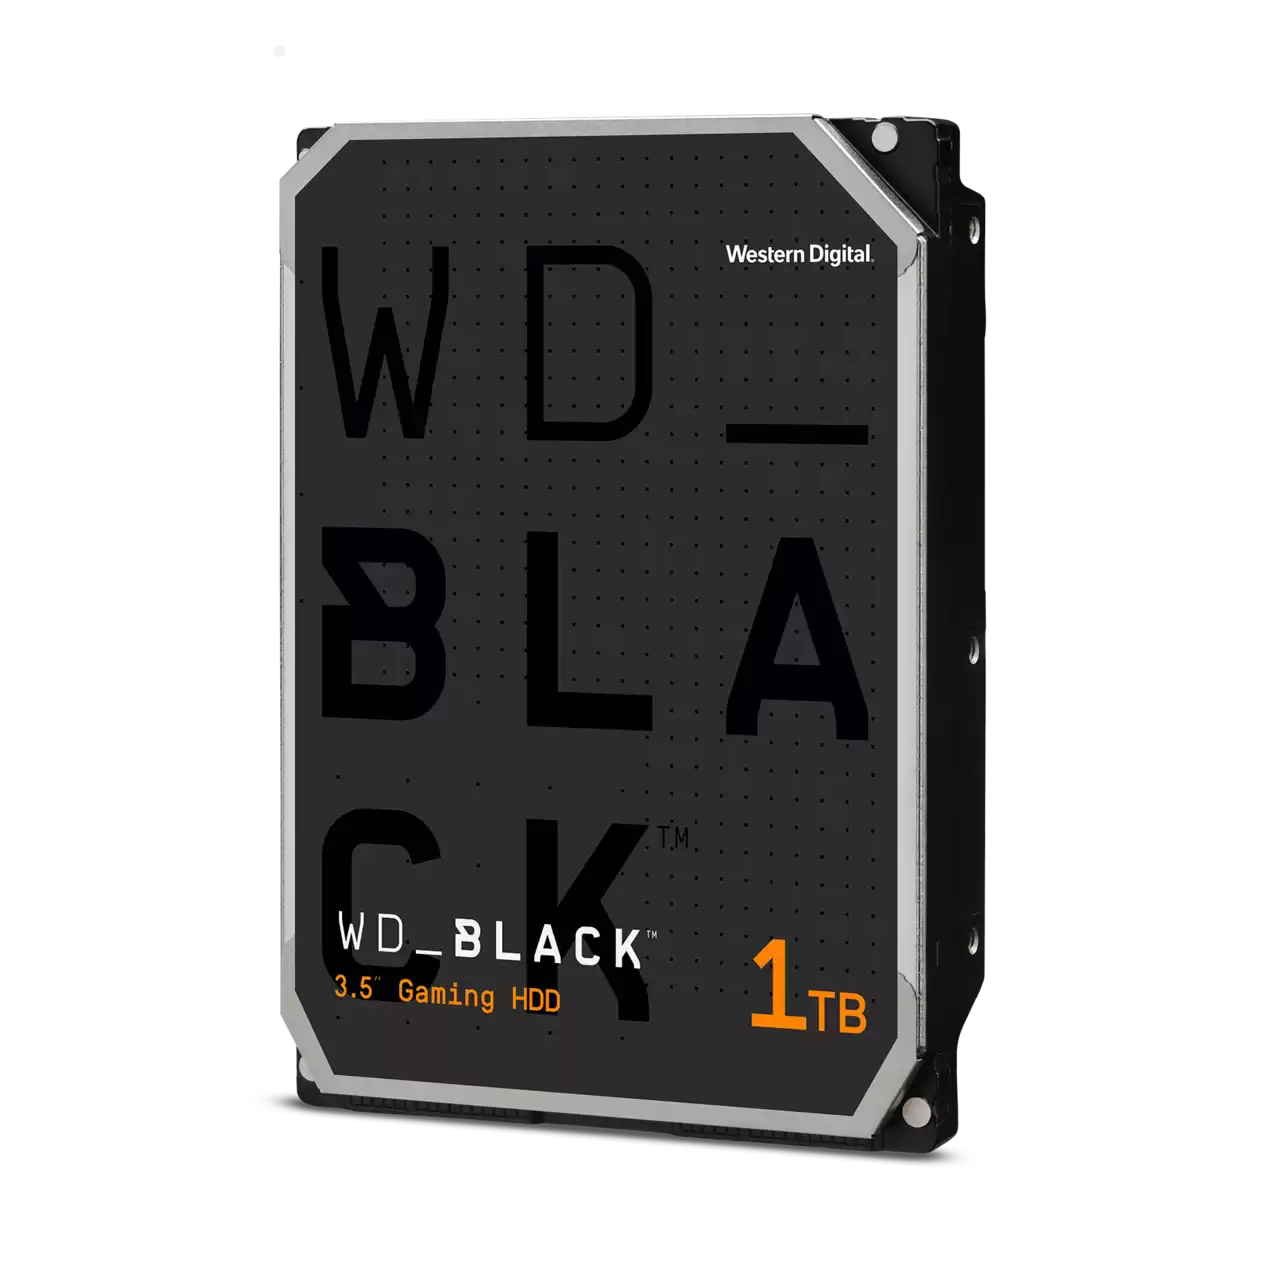 WD_BLACK Performance Desktop Hard Drive (1 TB) WD1003FZEX